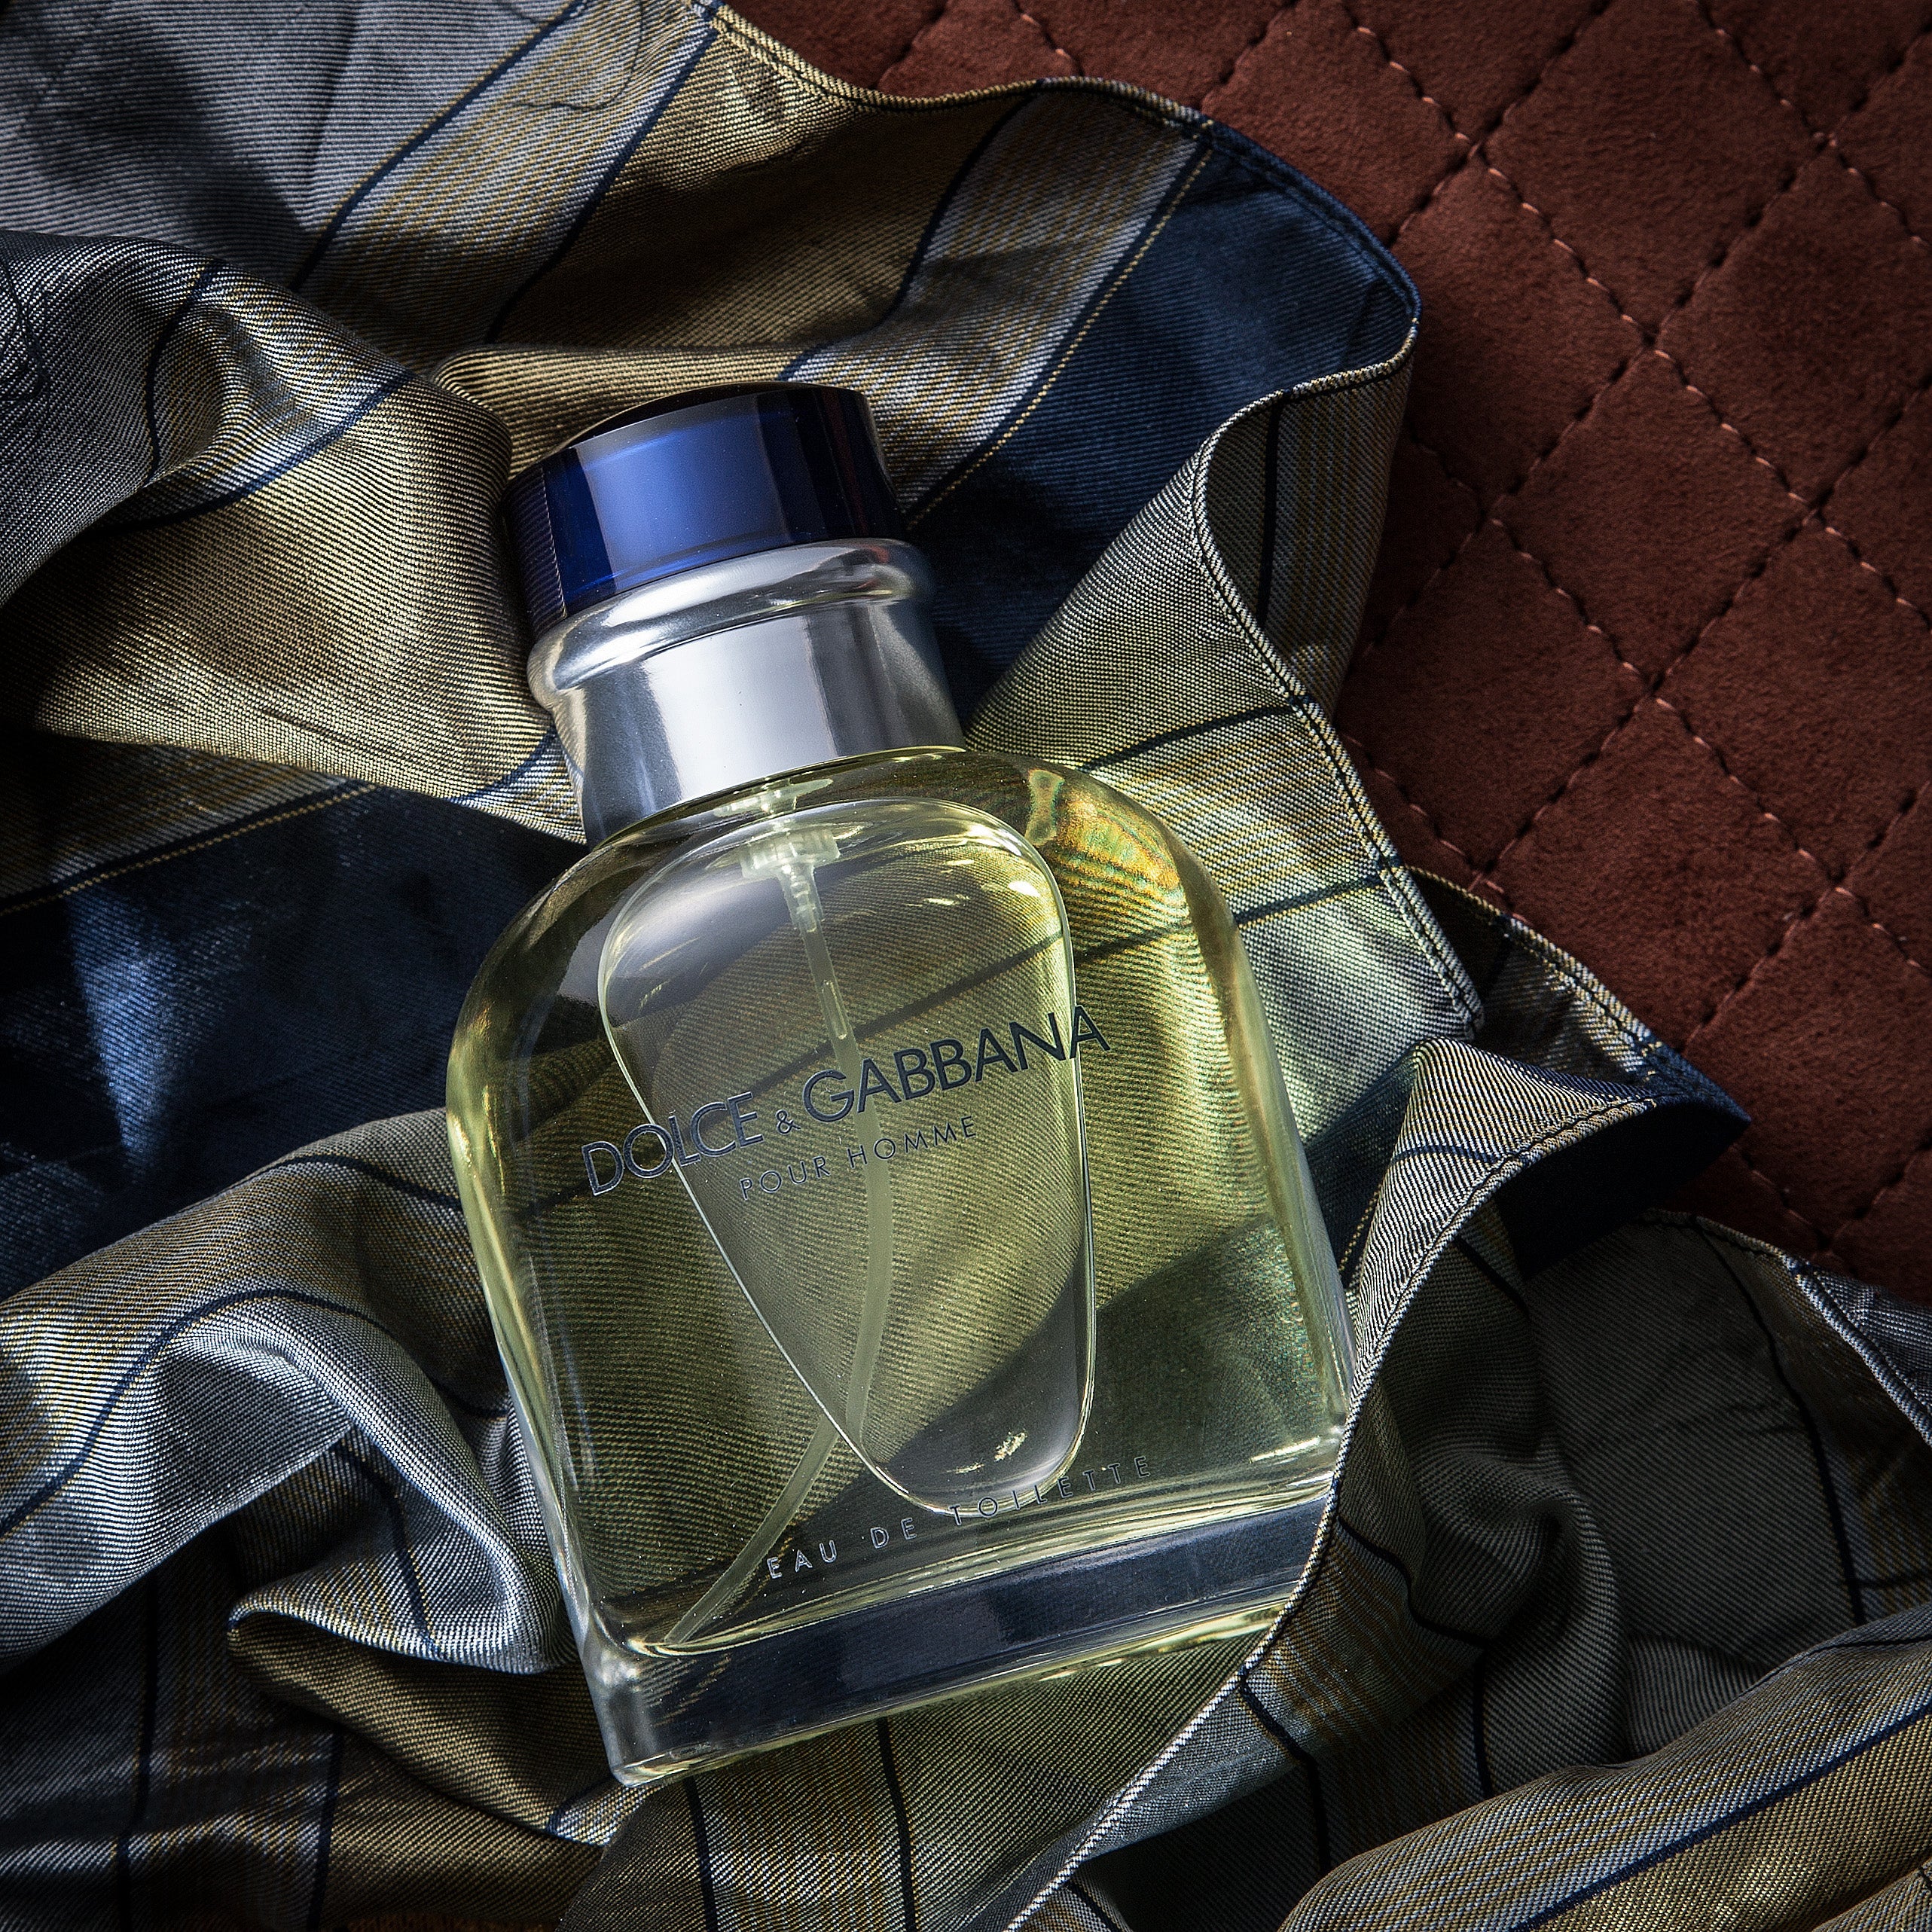 Dolce & Gabbana Pour Homme EDT | My Perfume Shop Australia